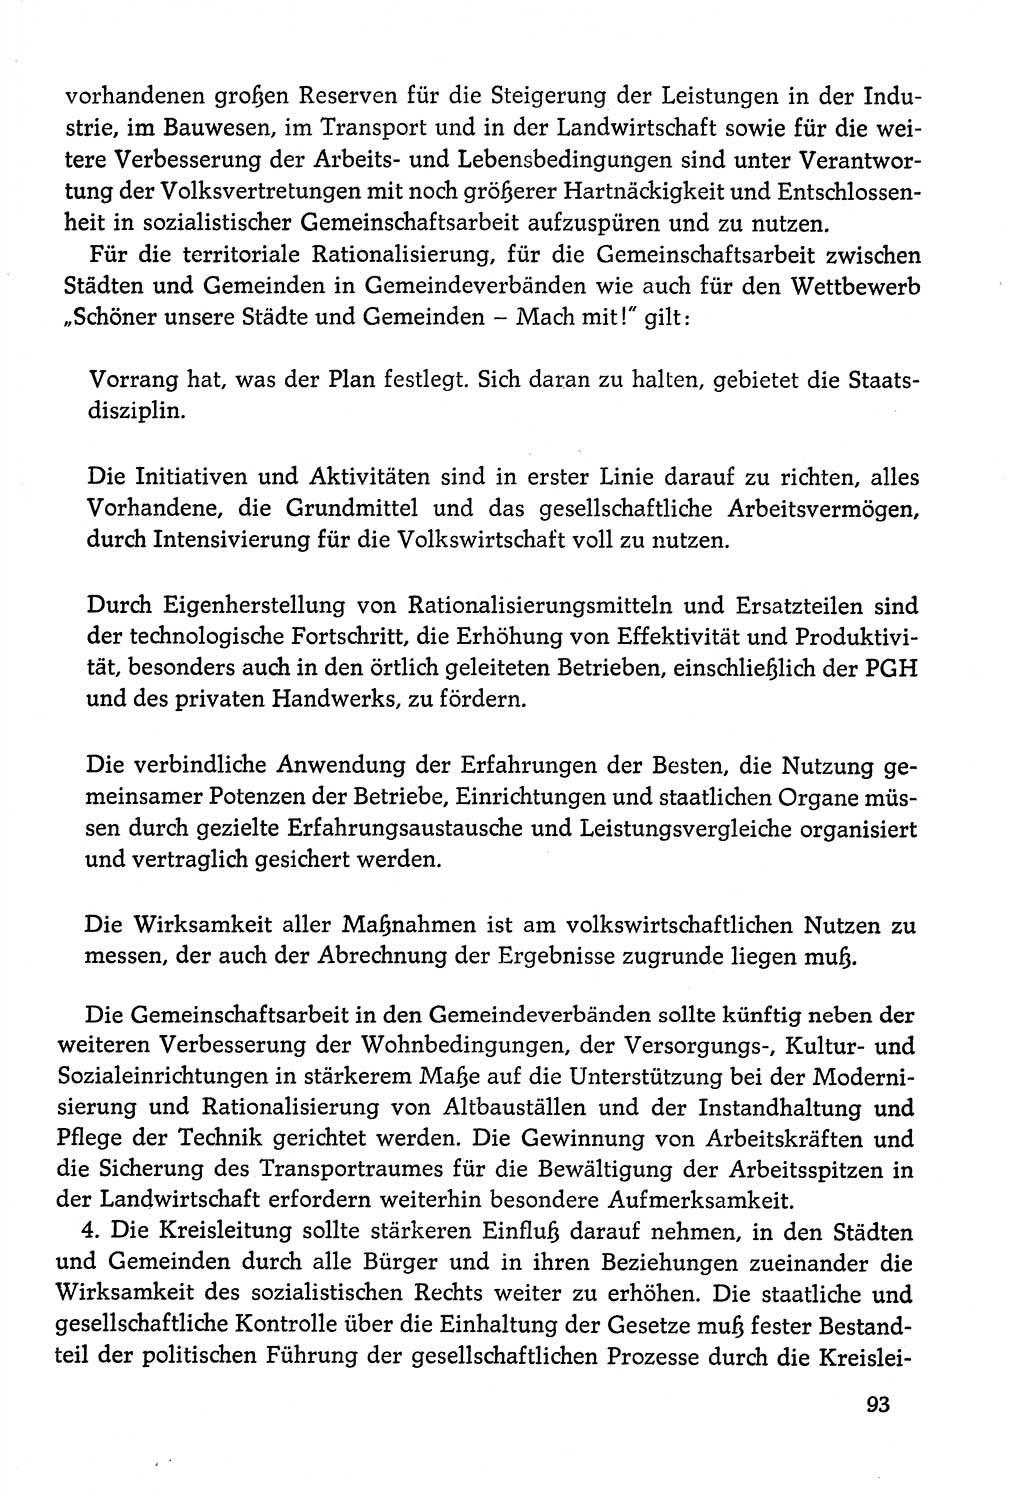 Dokumente der Sozialistischen Einheitspartei Deutschlands (SED) [Deutsche Demokratische Republik (DDR)] 1978-1979, Seite 93 (Dok. SED DDR 1978-1979, S. 93)